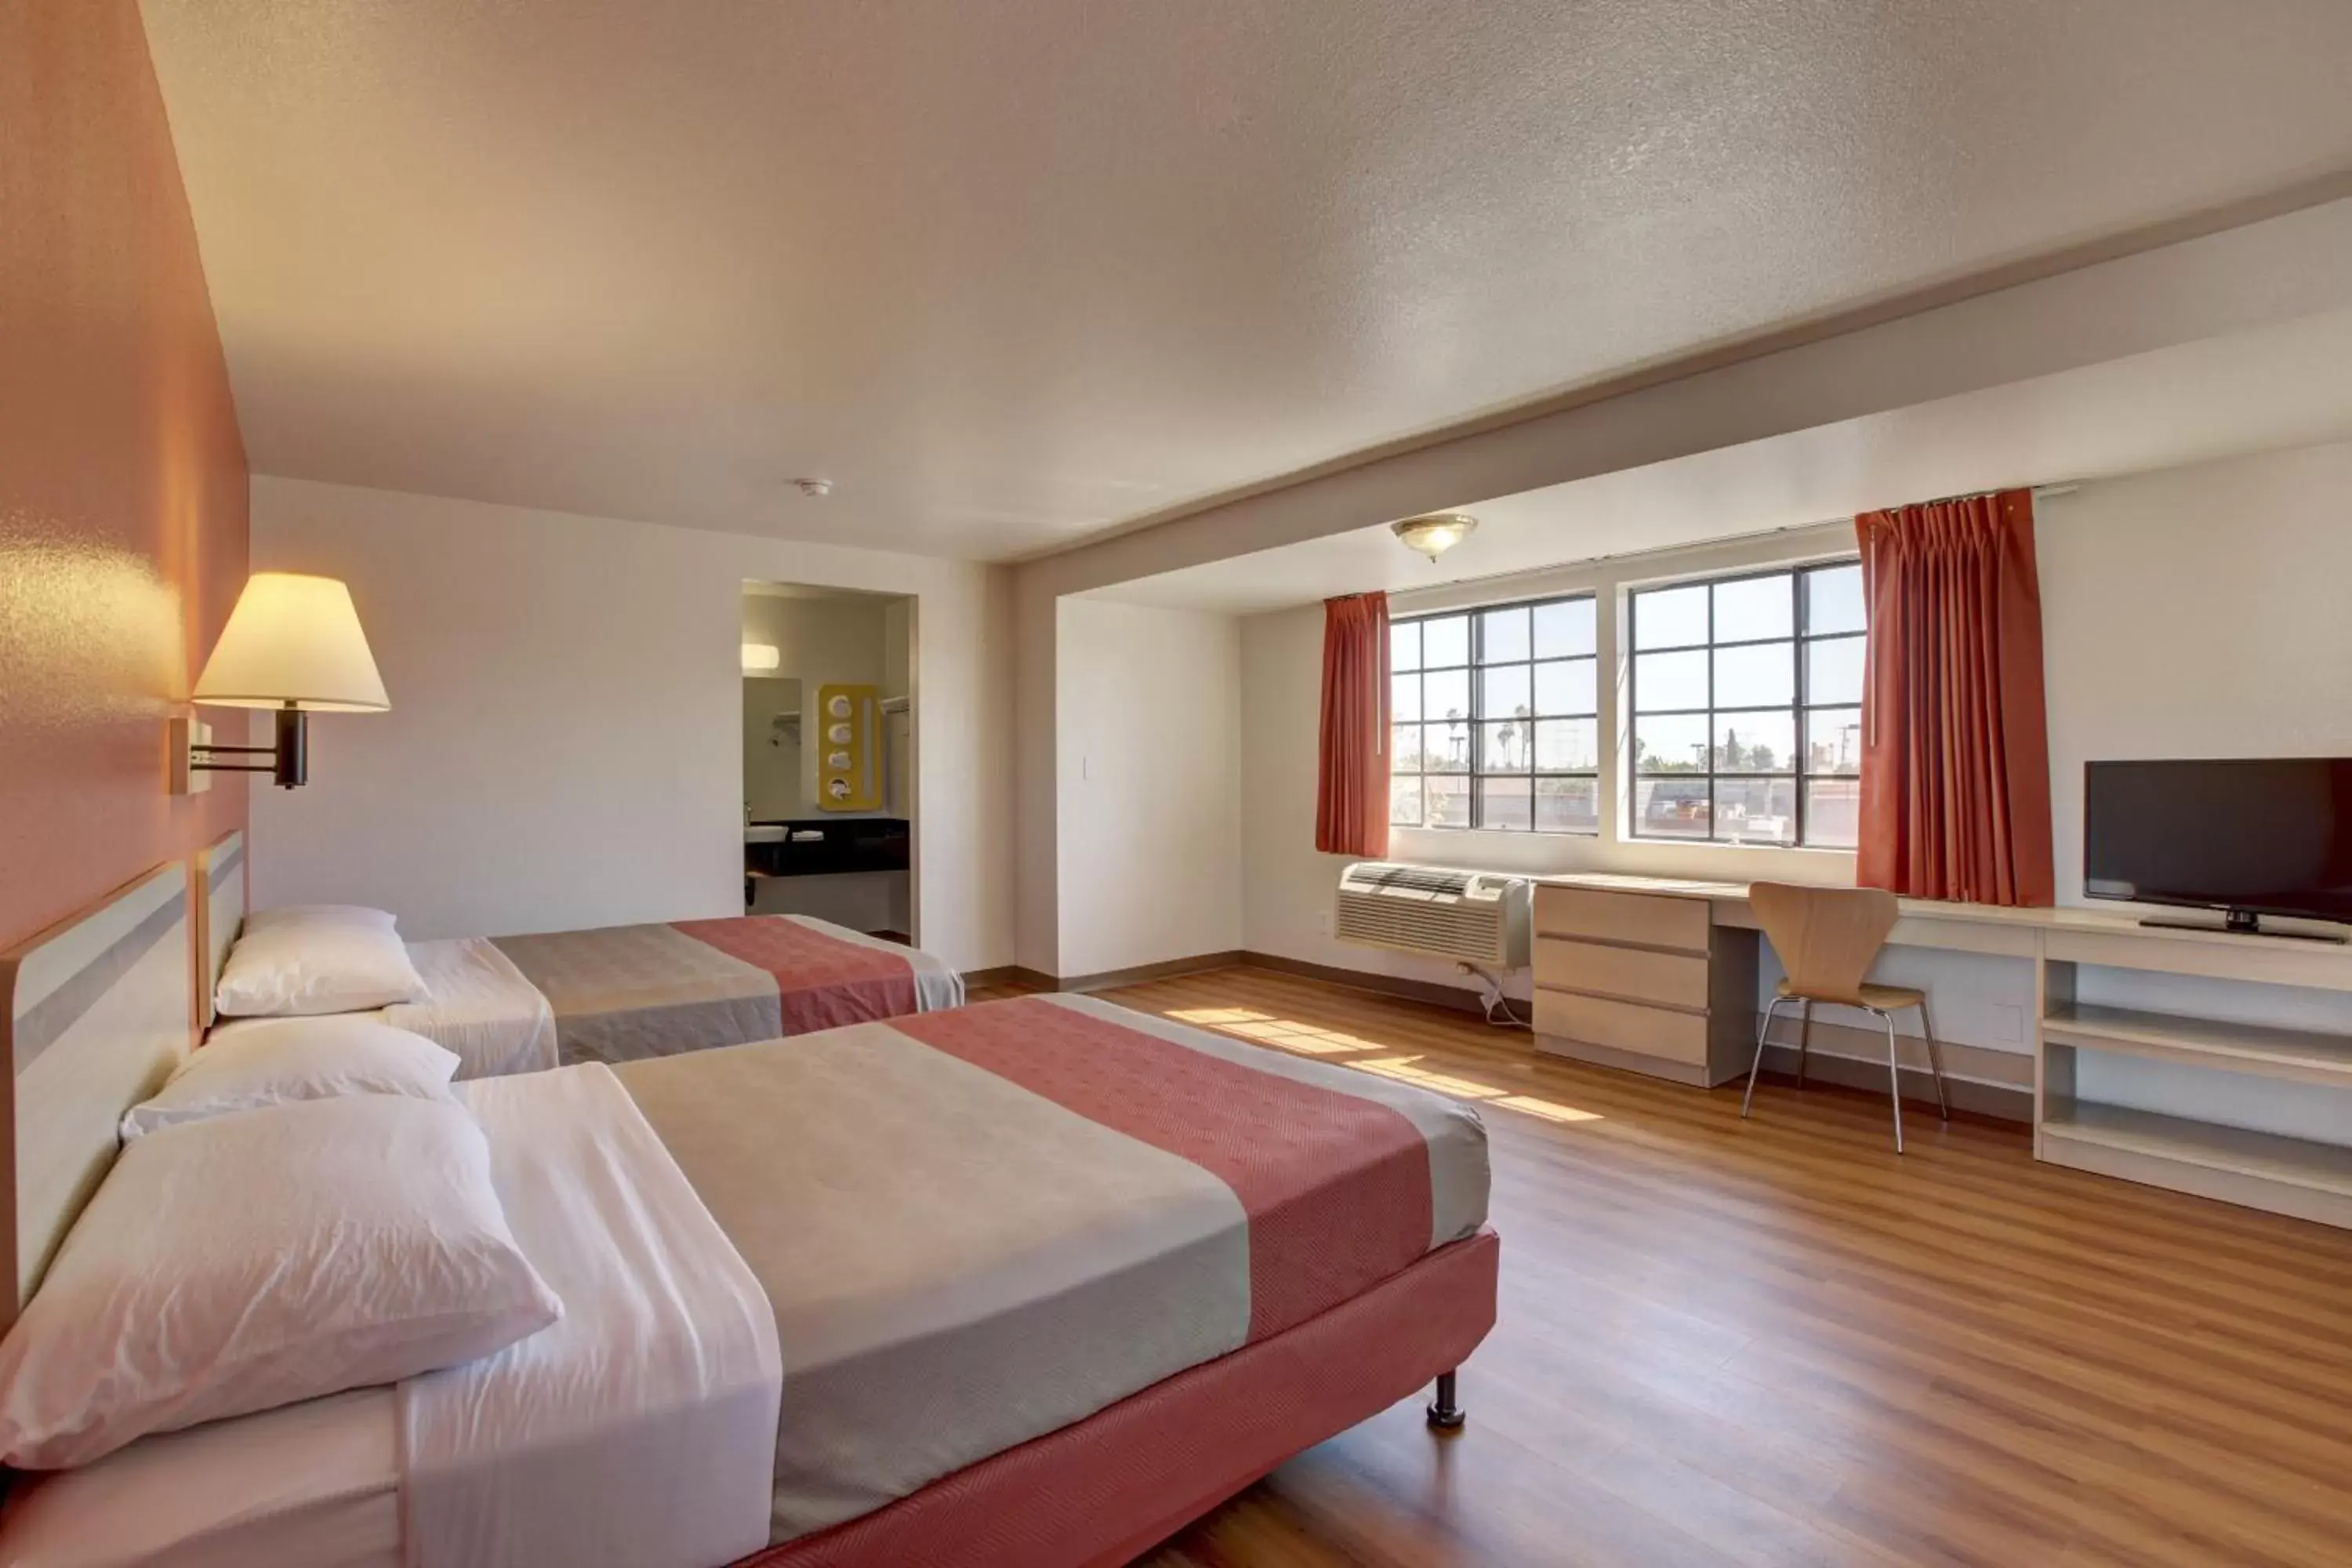 Bed, Room Photo in Motel 6-Bellflower, CA - Los Angeles